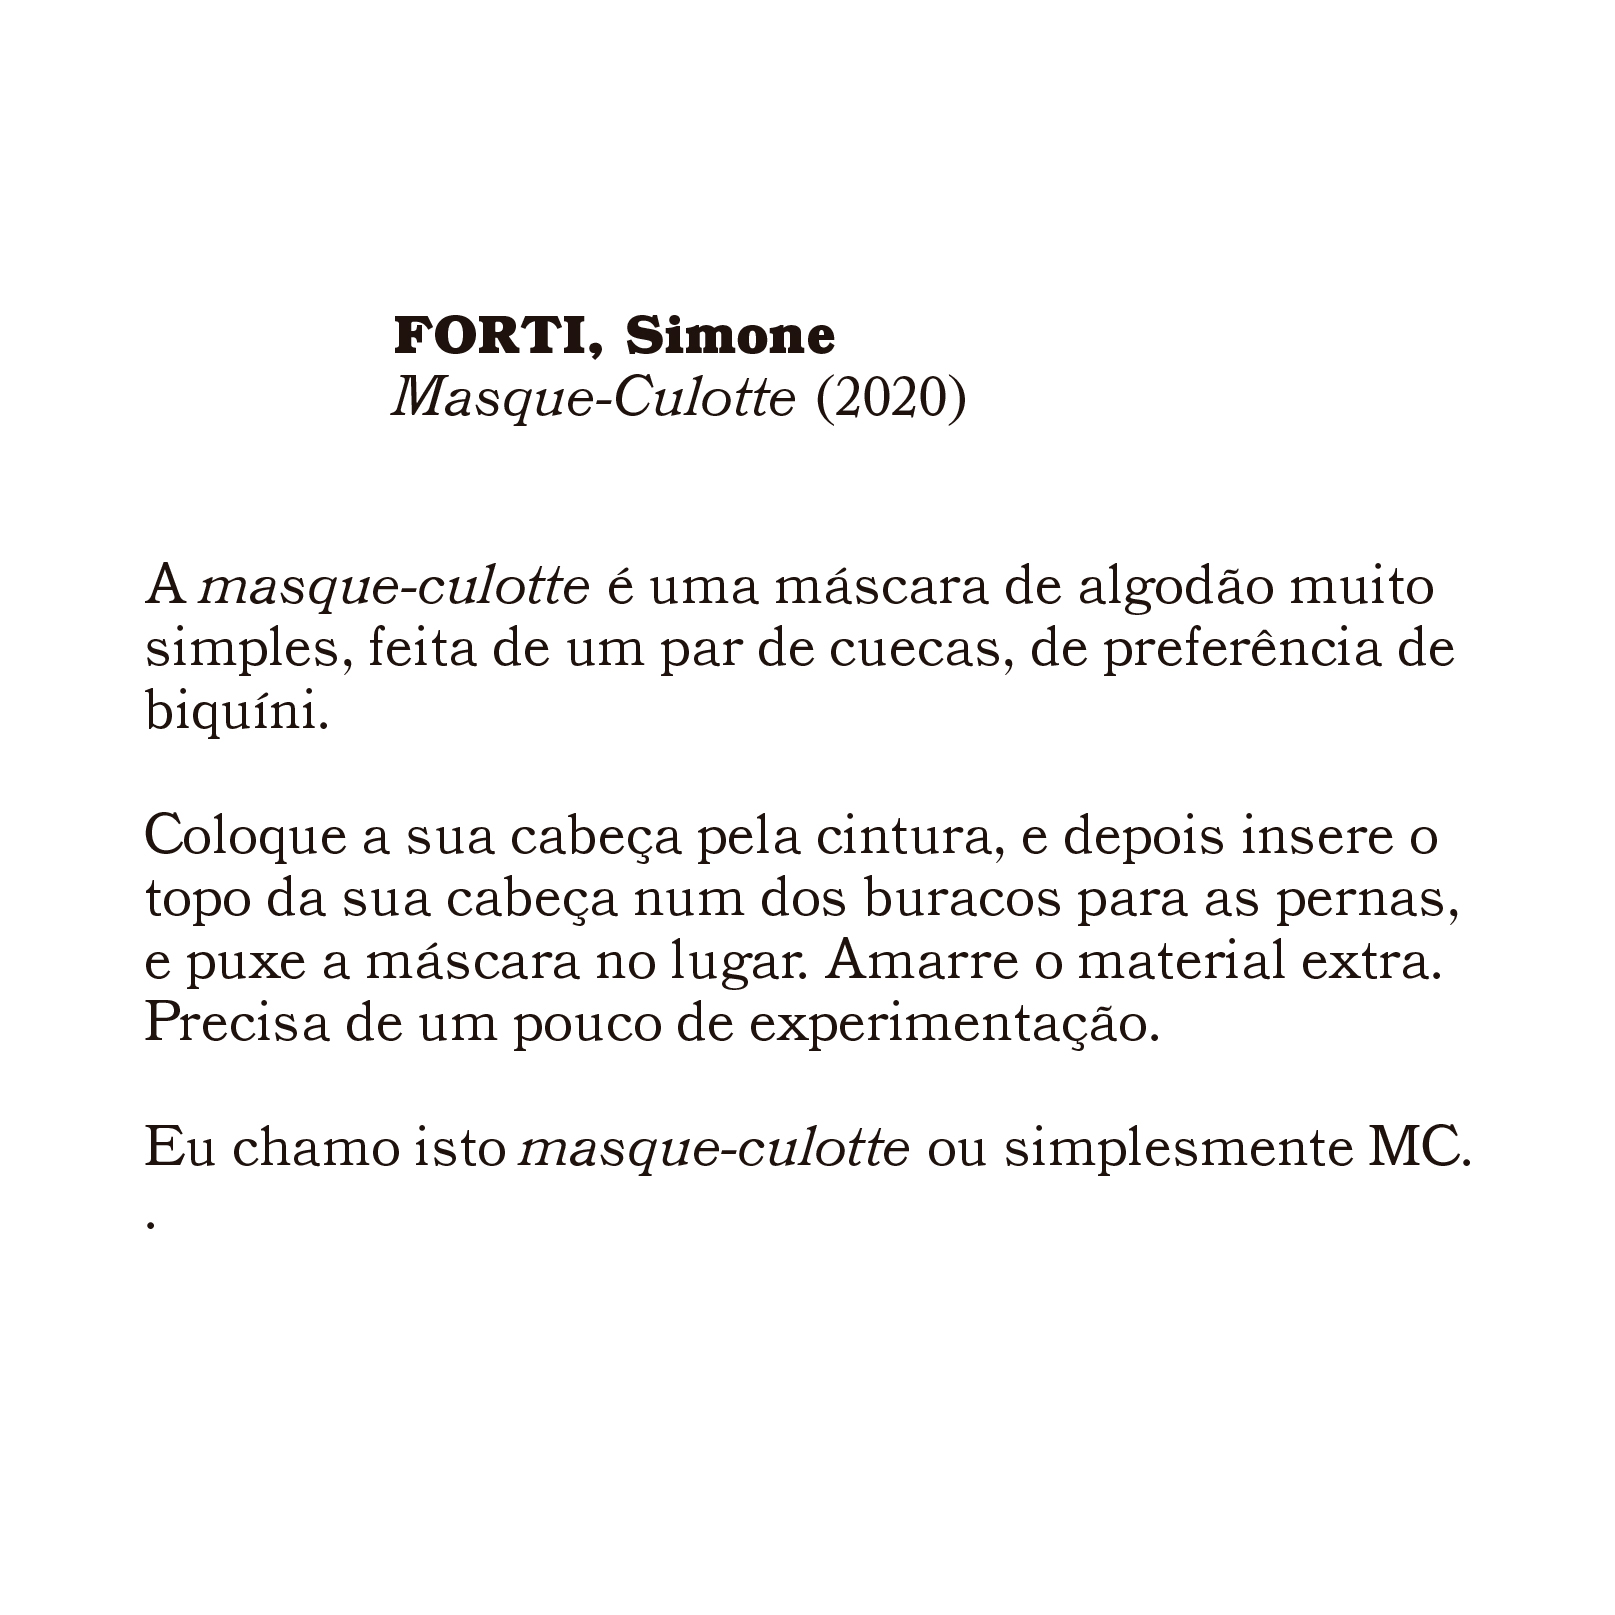 forti_simone_masque-culotte_2020.jpg